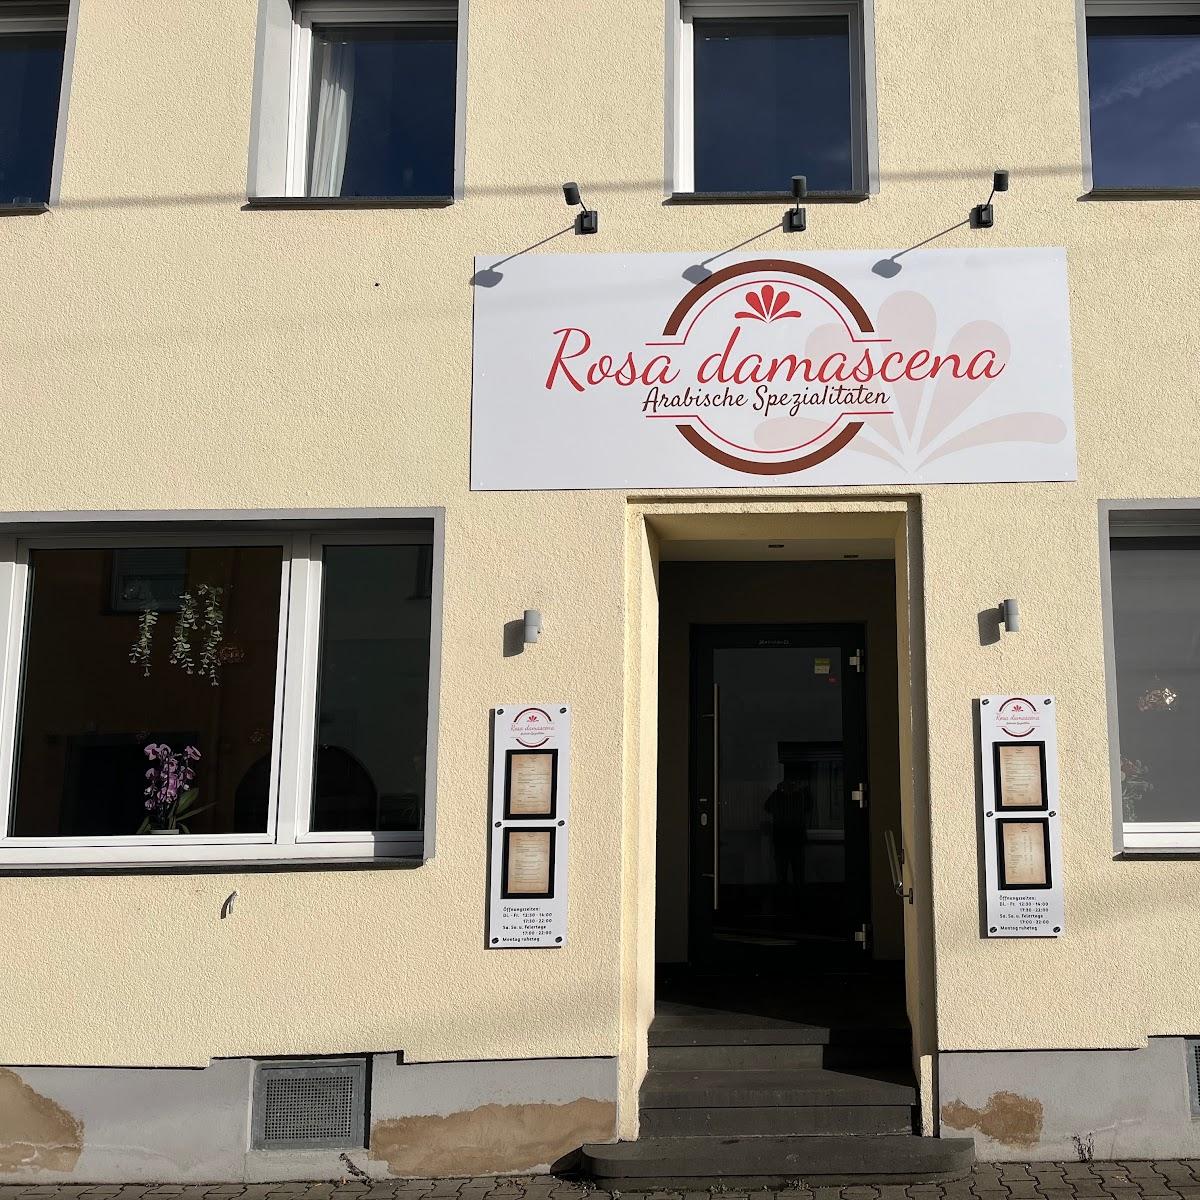 Restaurant "Rosa damascena" in Vallendar